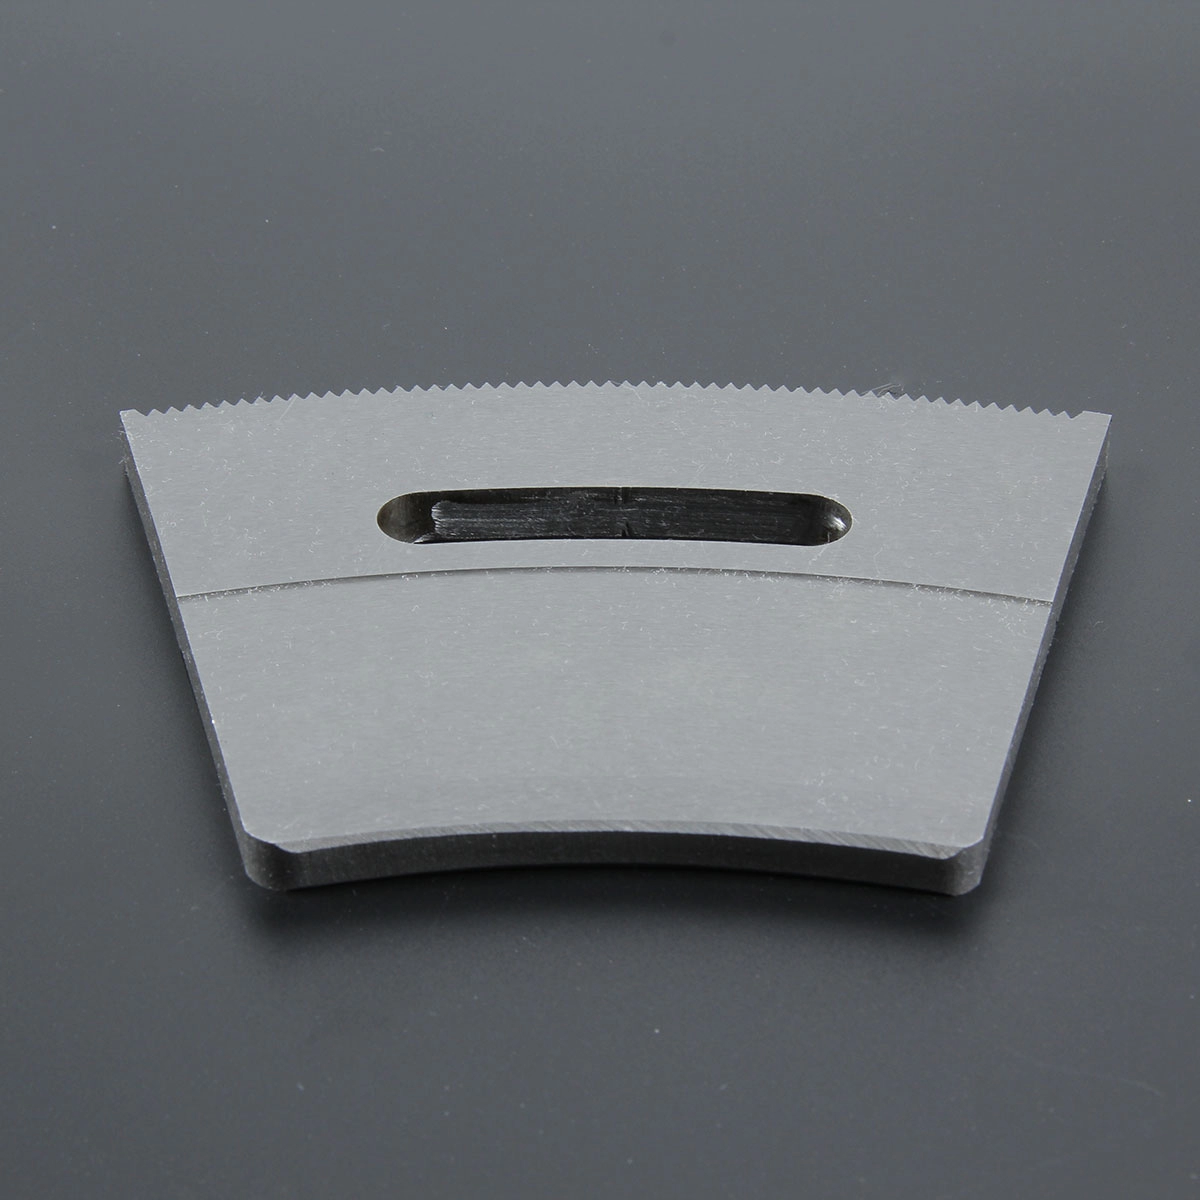 Faca cortadora de papelão ondulado Groove slot faca